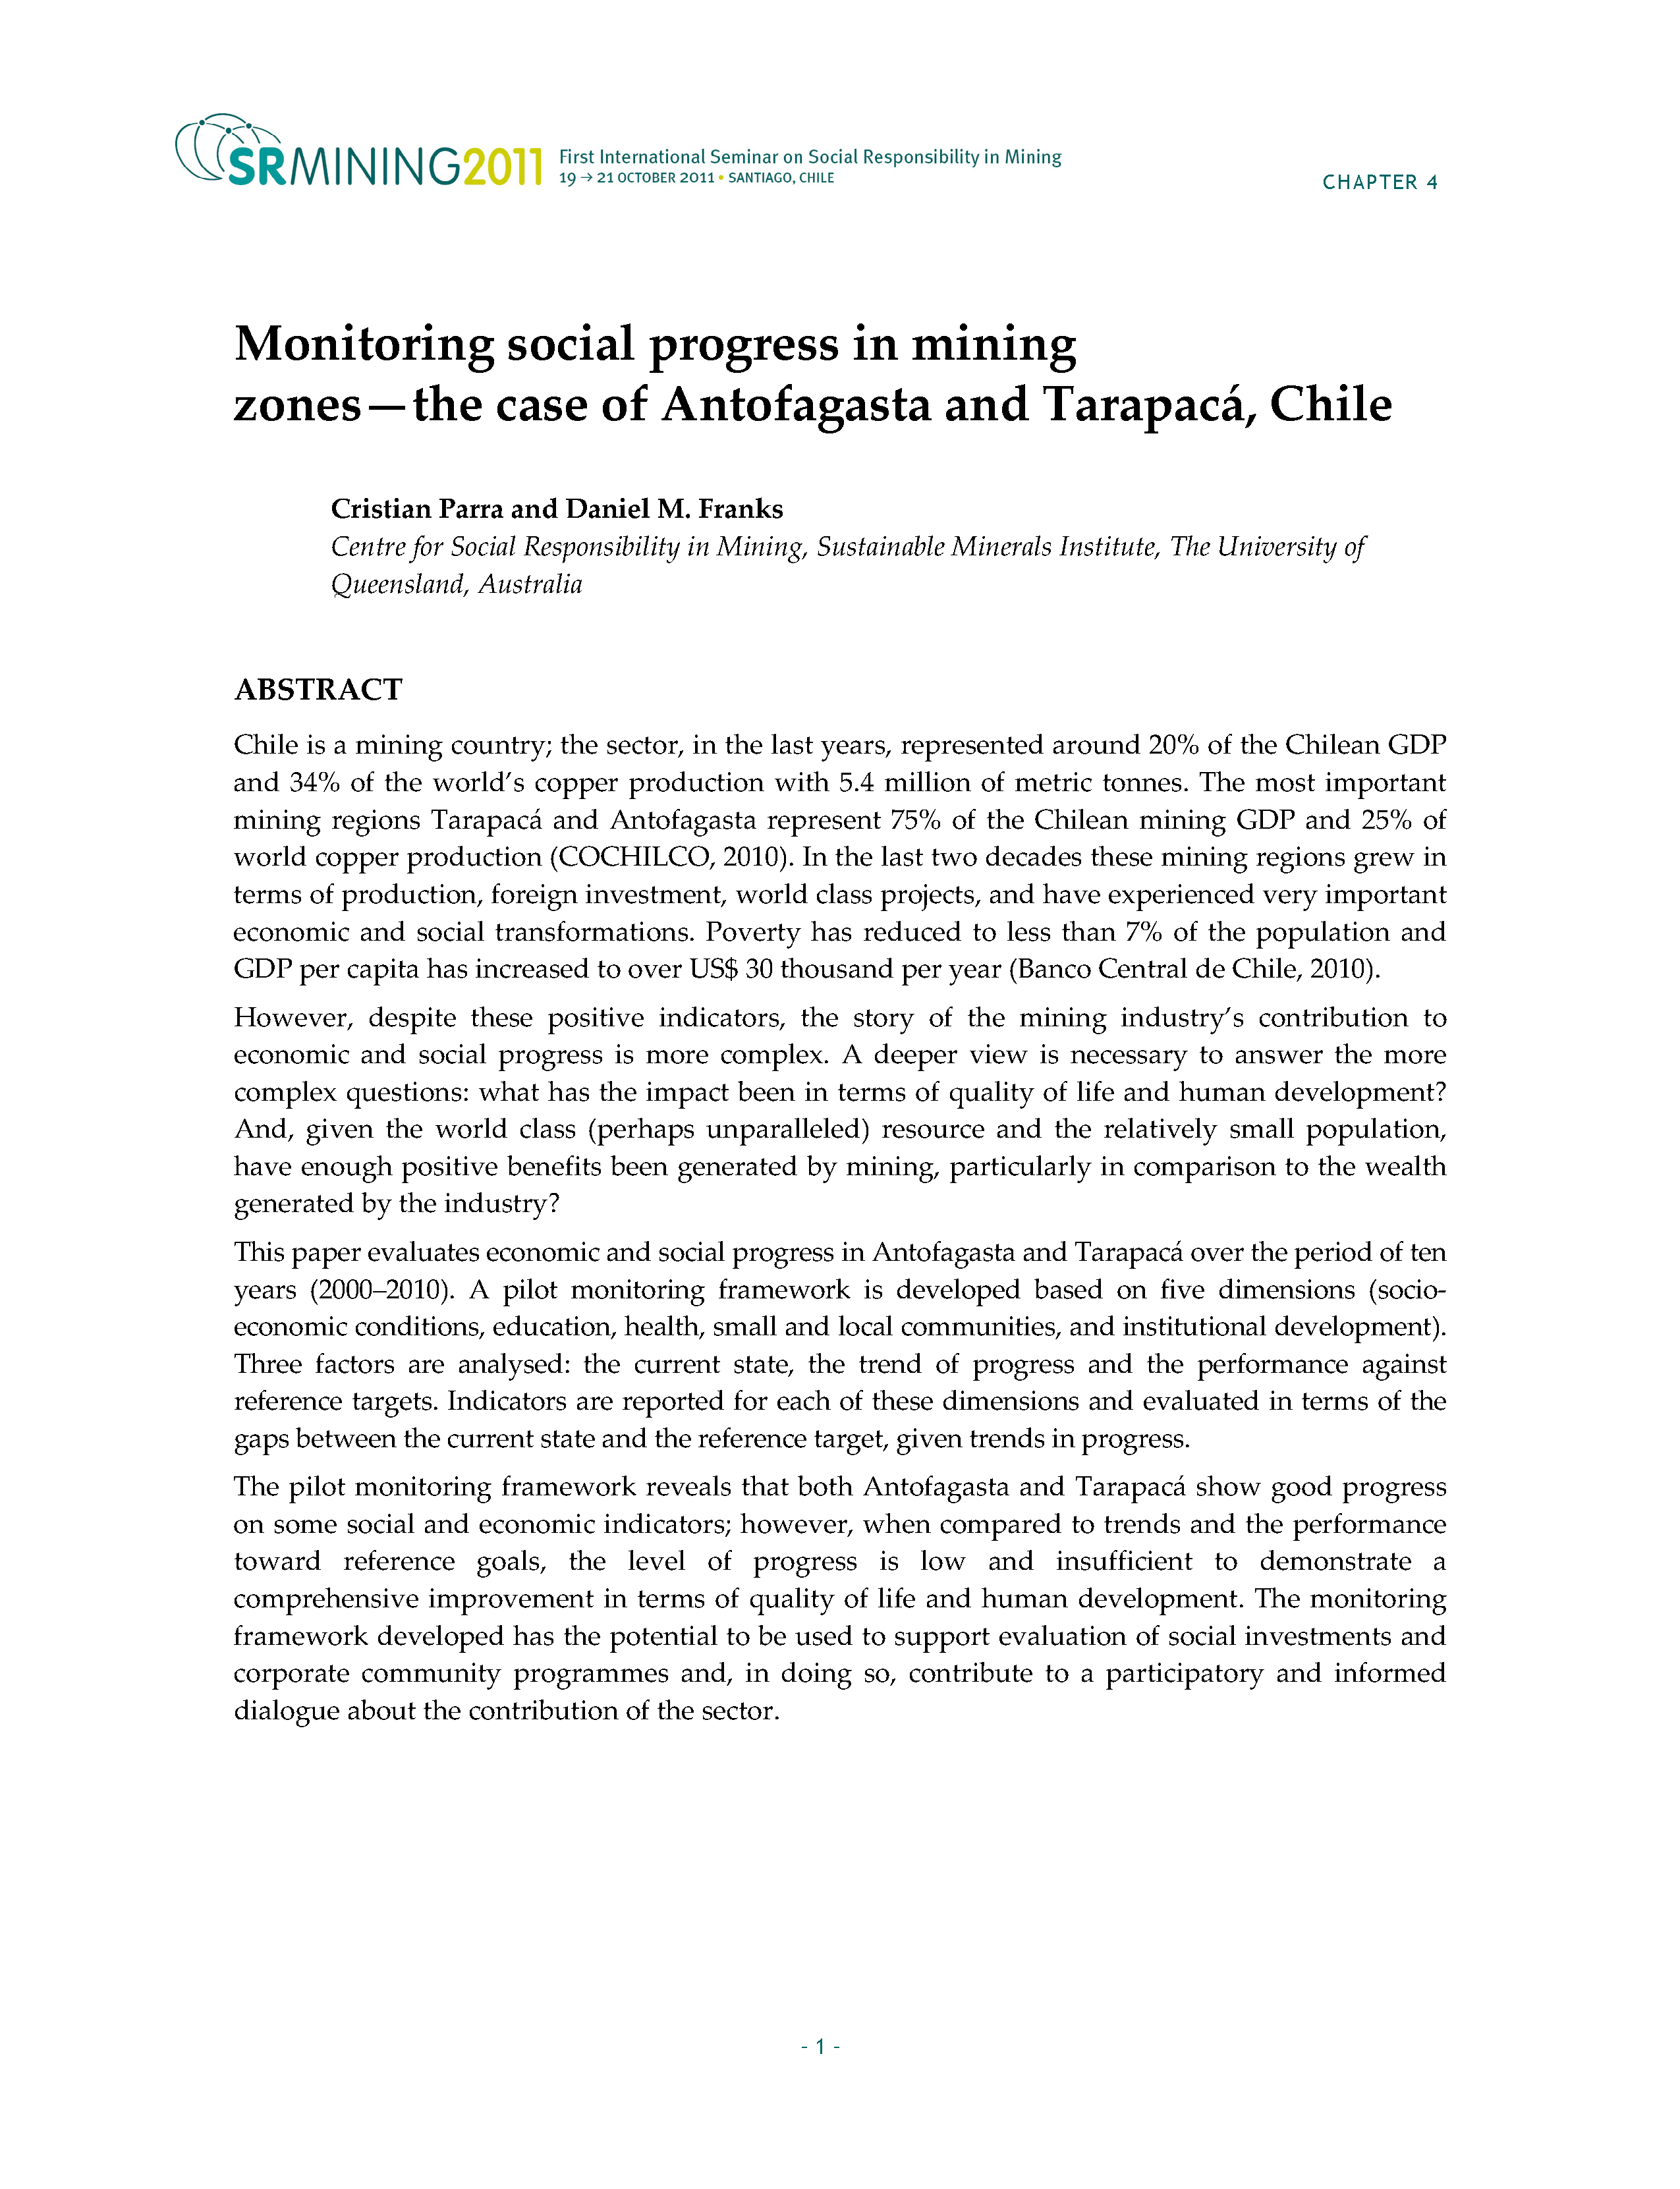 Monitoring social progress in mining zones